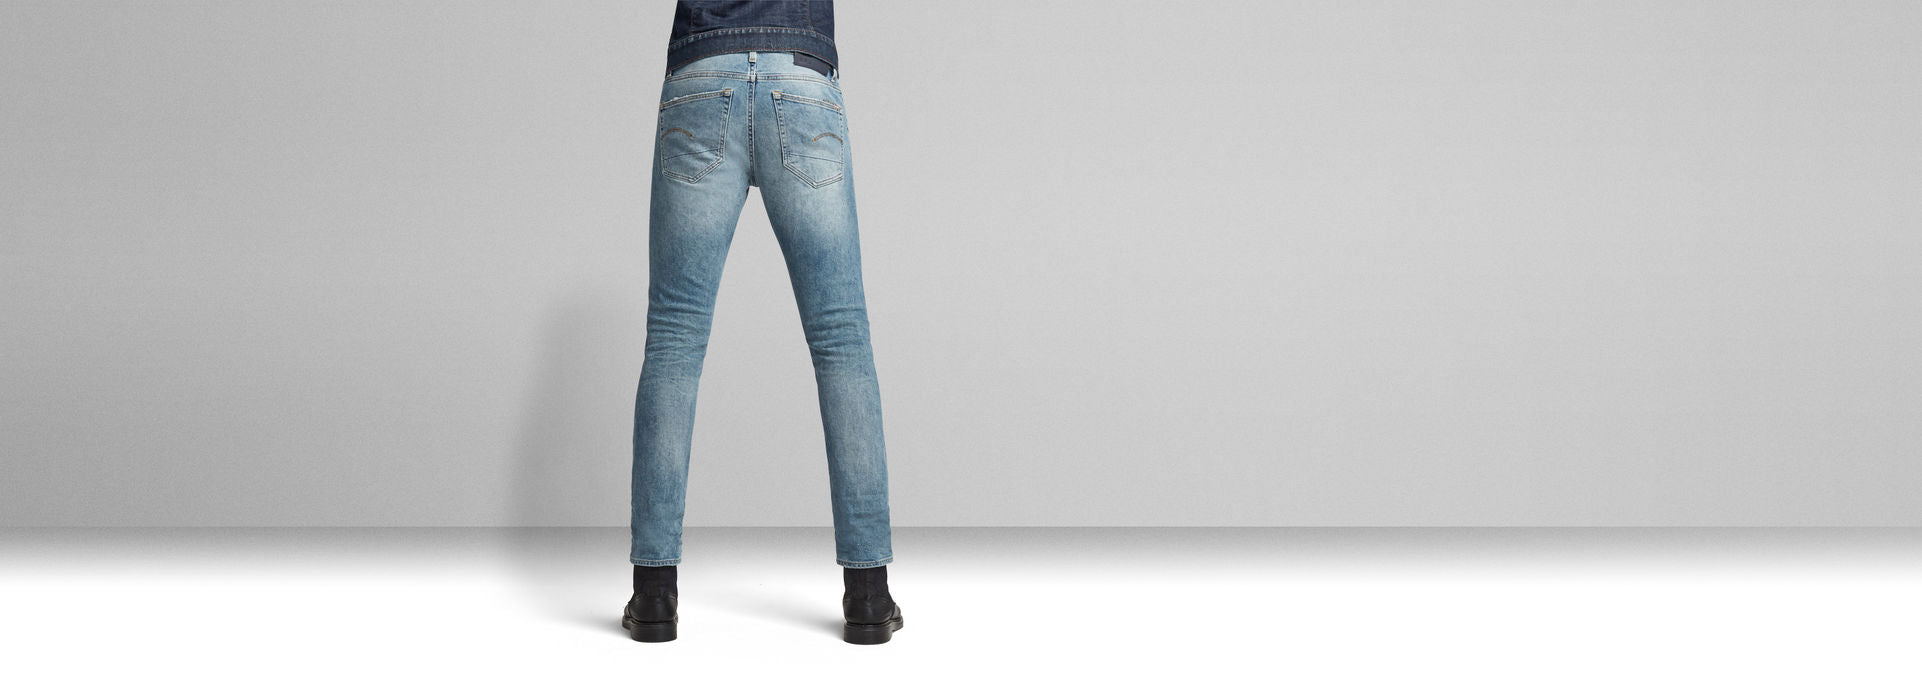 G-Star Raw Men's 3301 Slim Selvedge Jeans